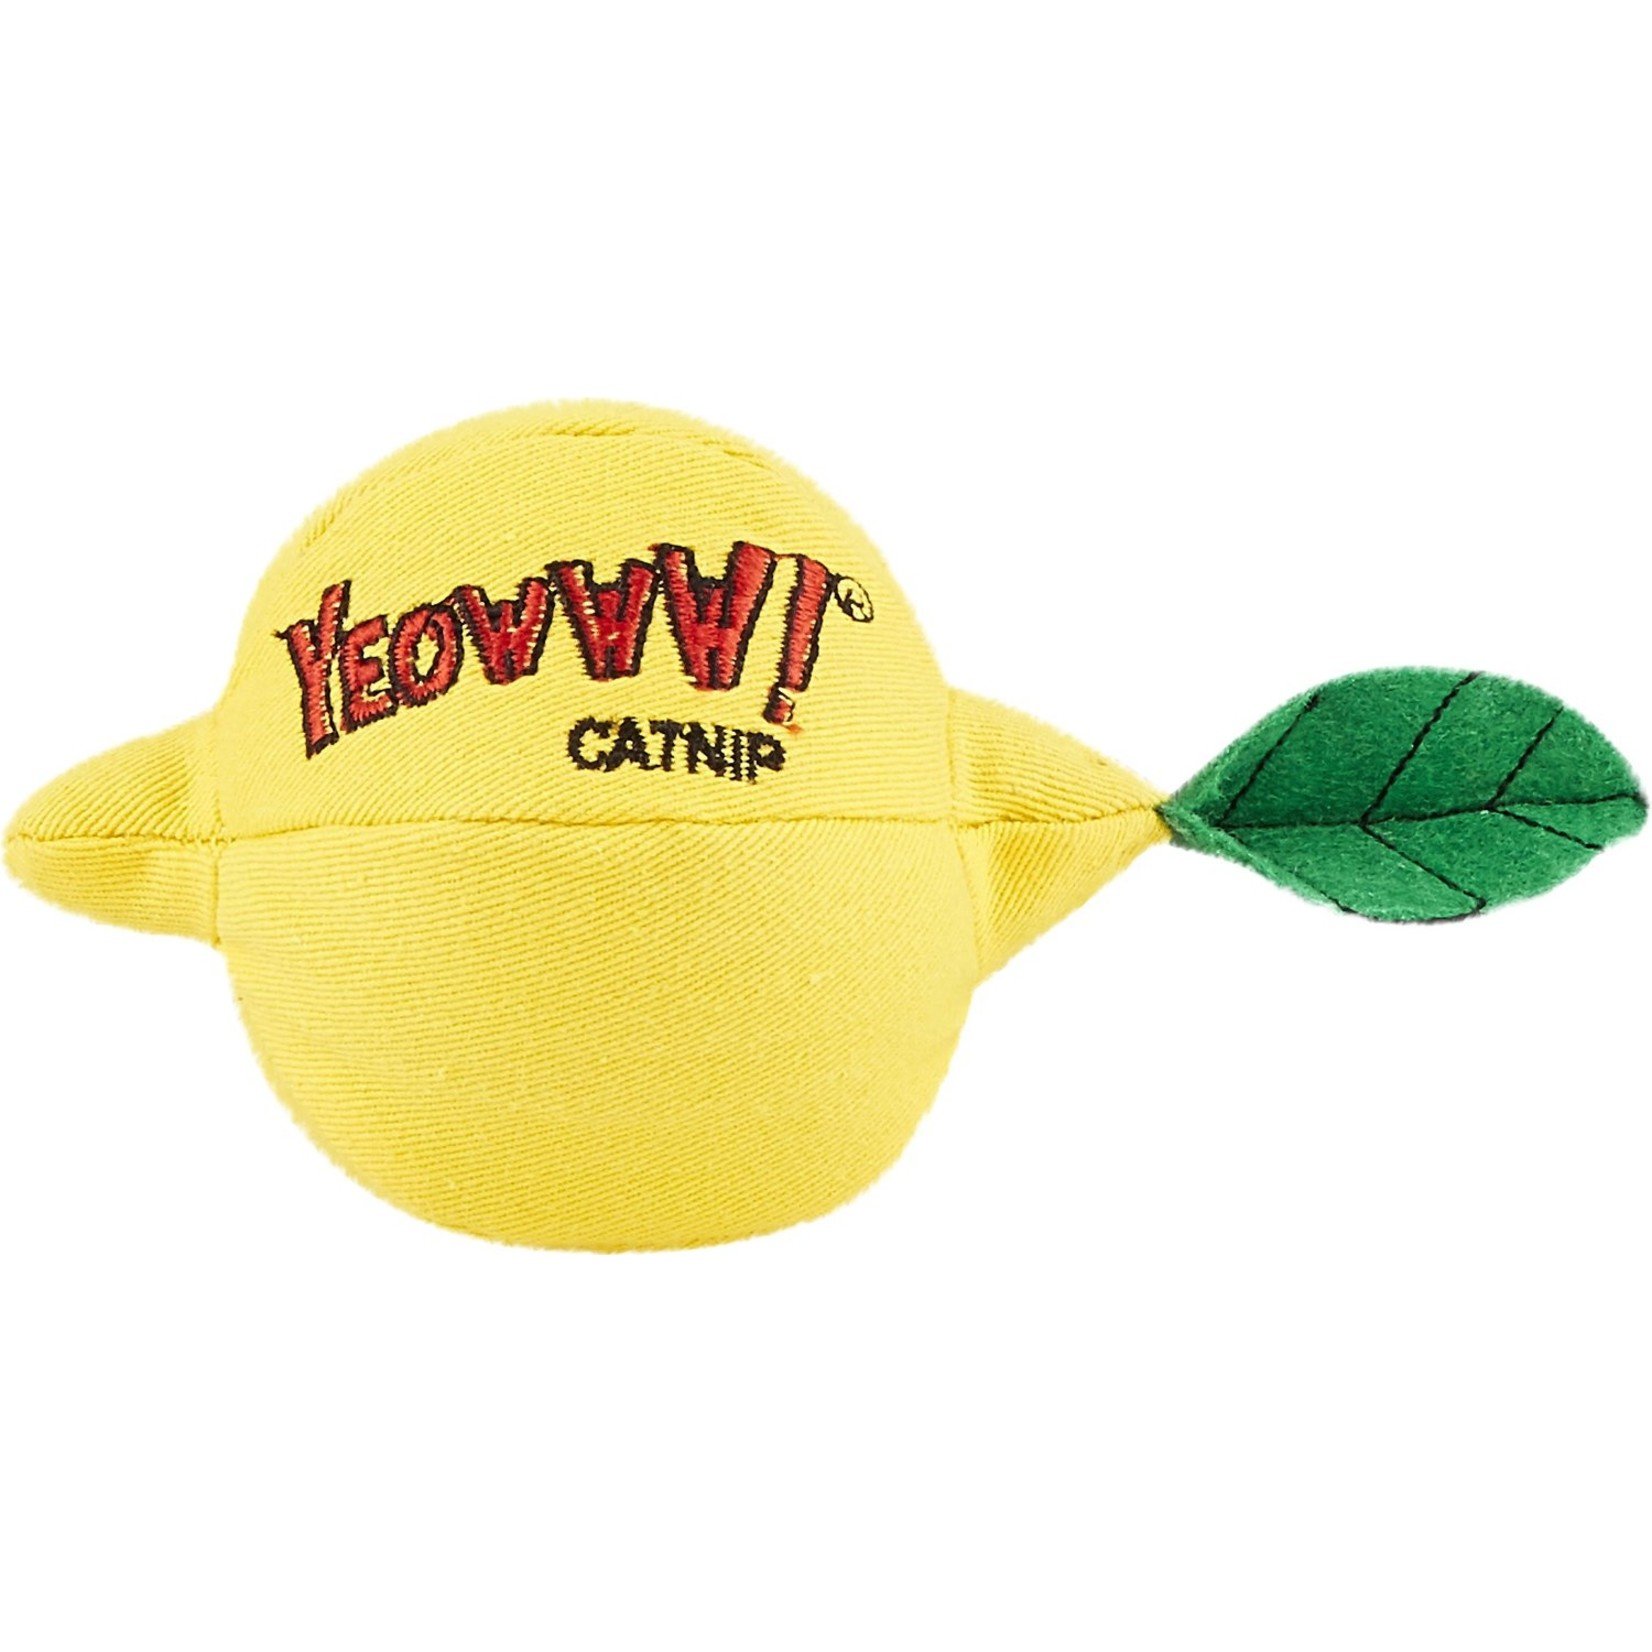 Yeowww! Catnip Yeowww! Catnip Sour Puss! Lemon Toy